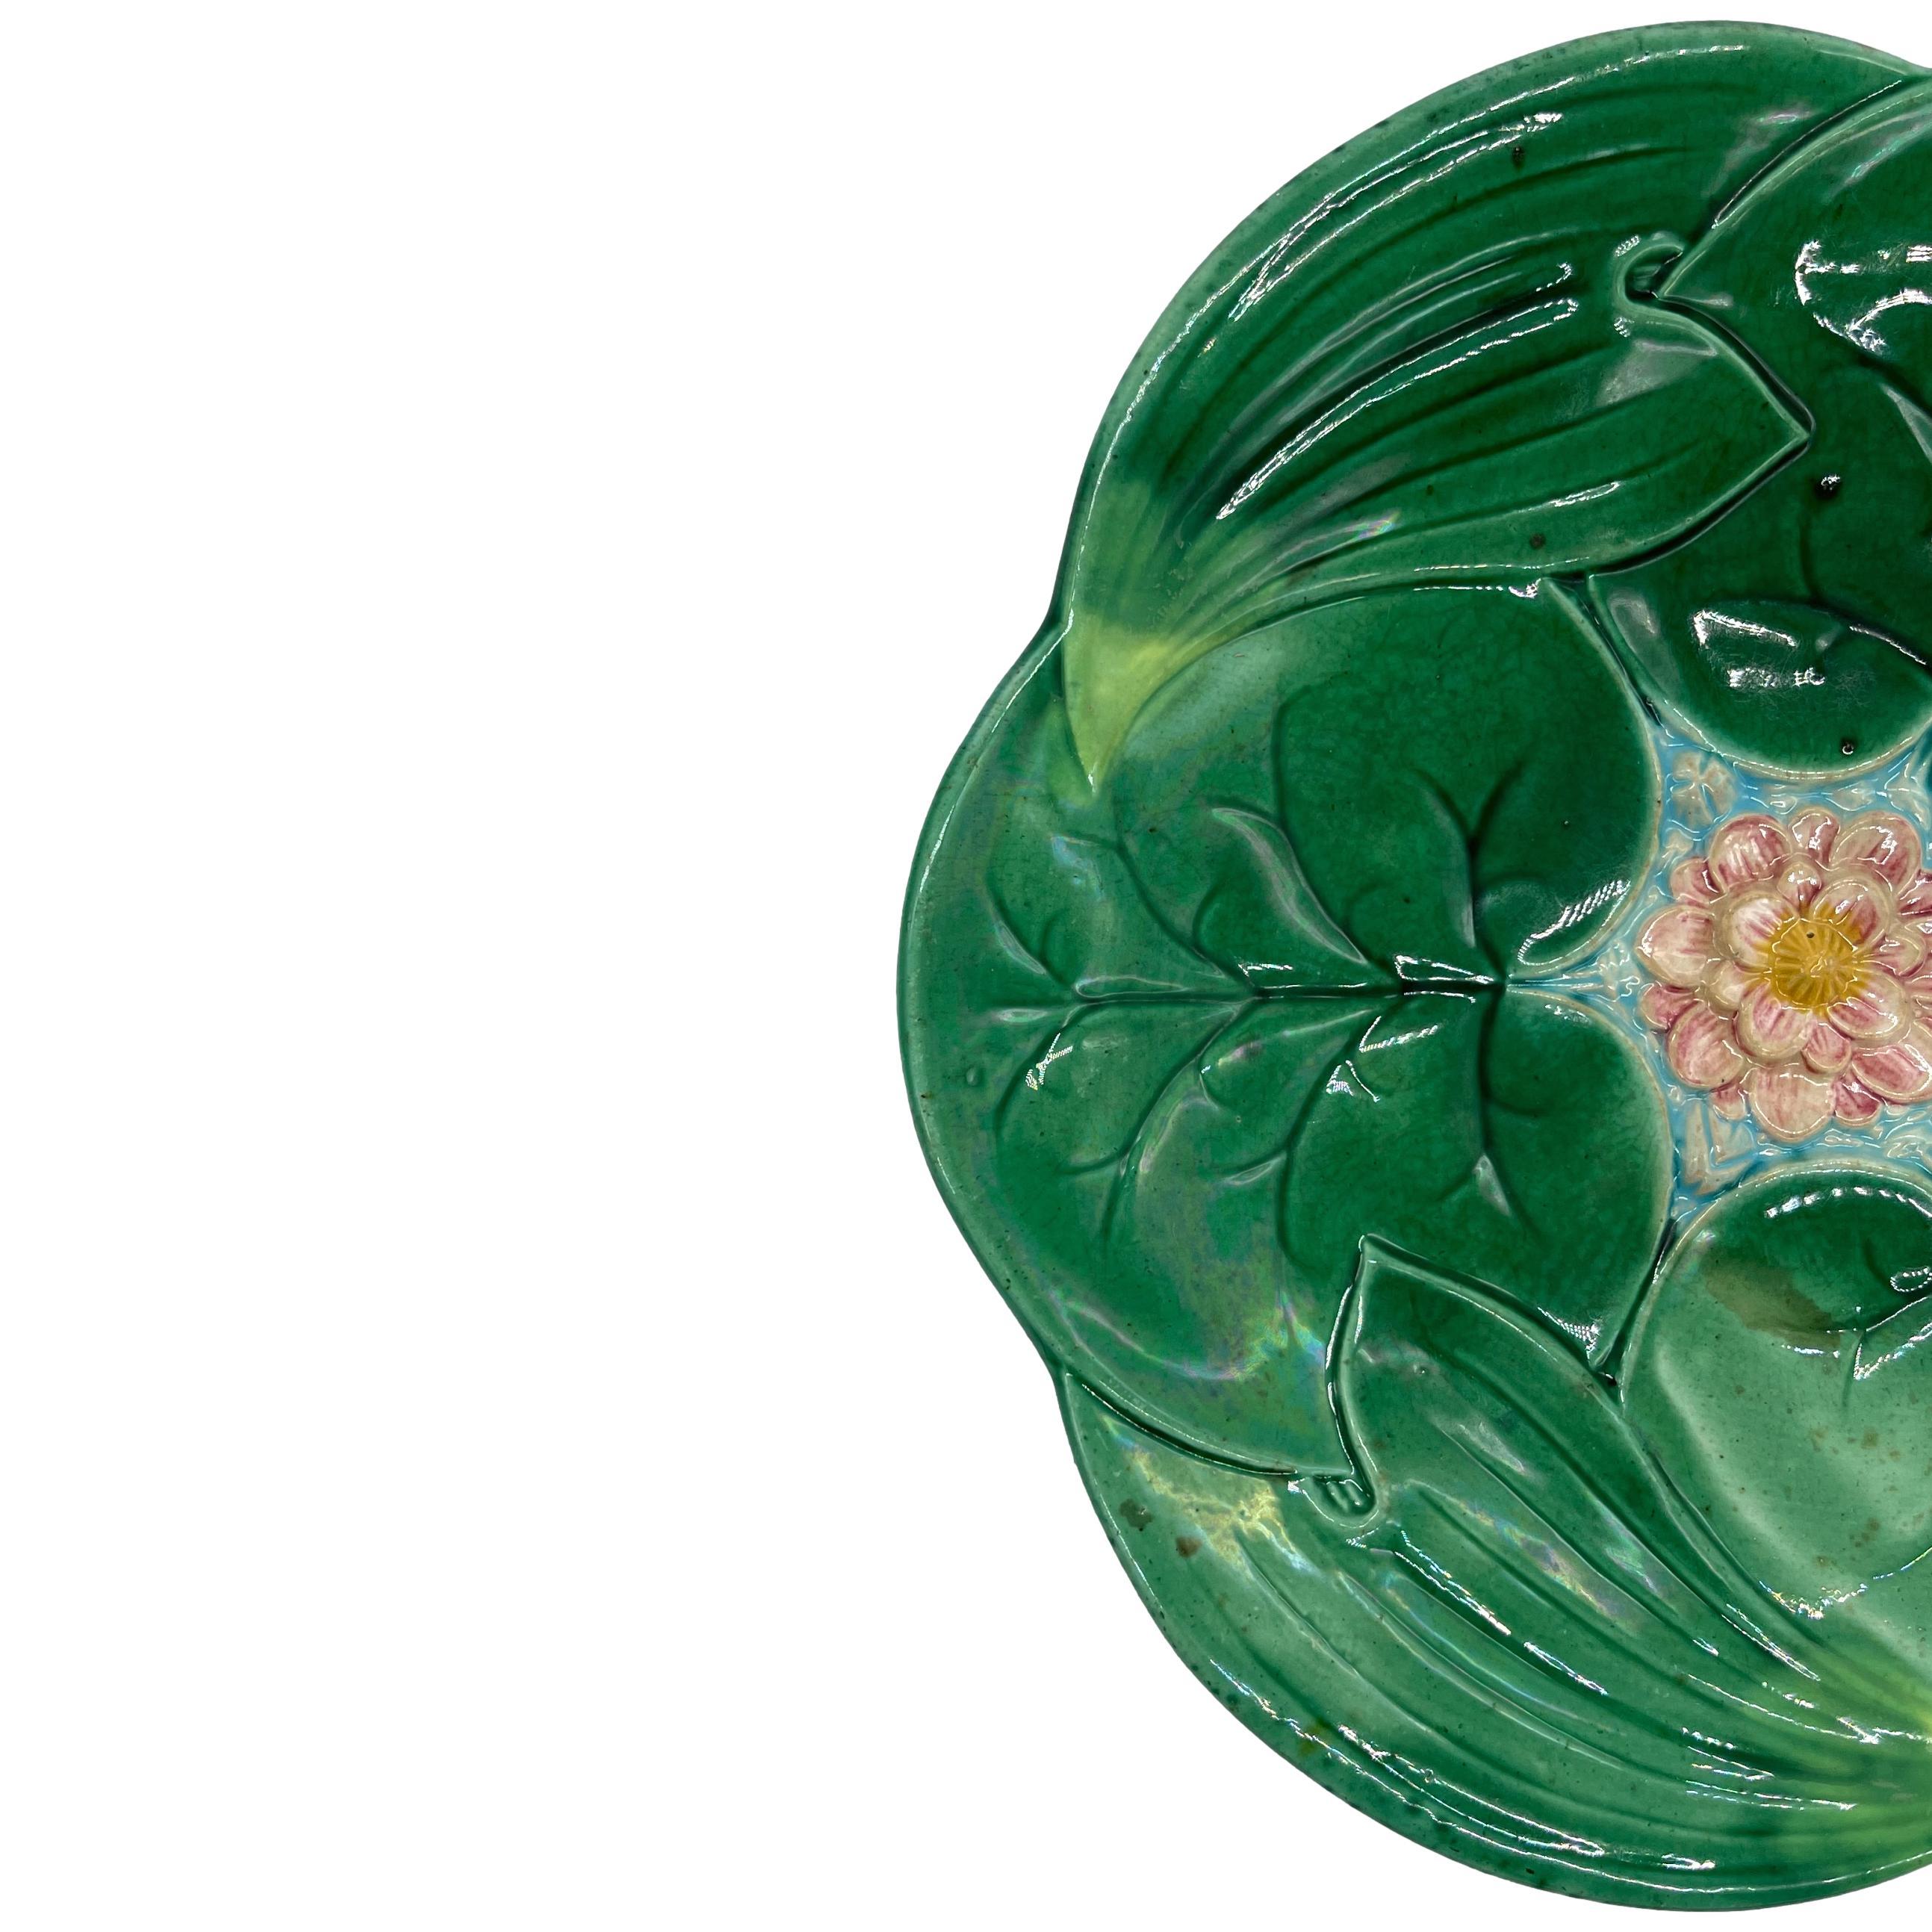 Assiette à lotus en majolique de George Jones, moulée de façon naturaliste comme des nénuphars et des feuilles de lotus se chevauchant, avec une fleur de lotus centrale rose et jaune moulée en relief sur de l'eau émaillée turquoise, le revers